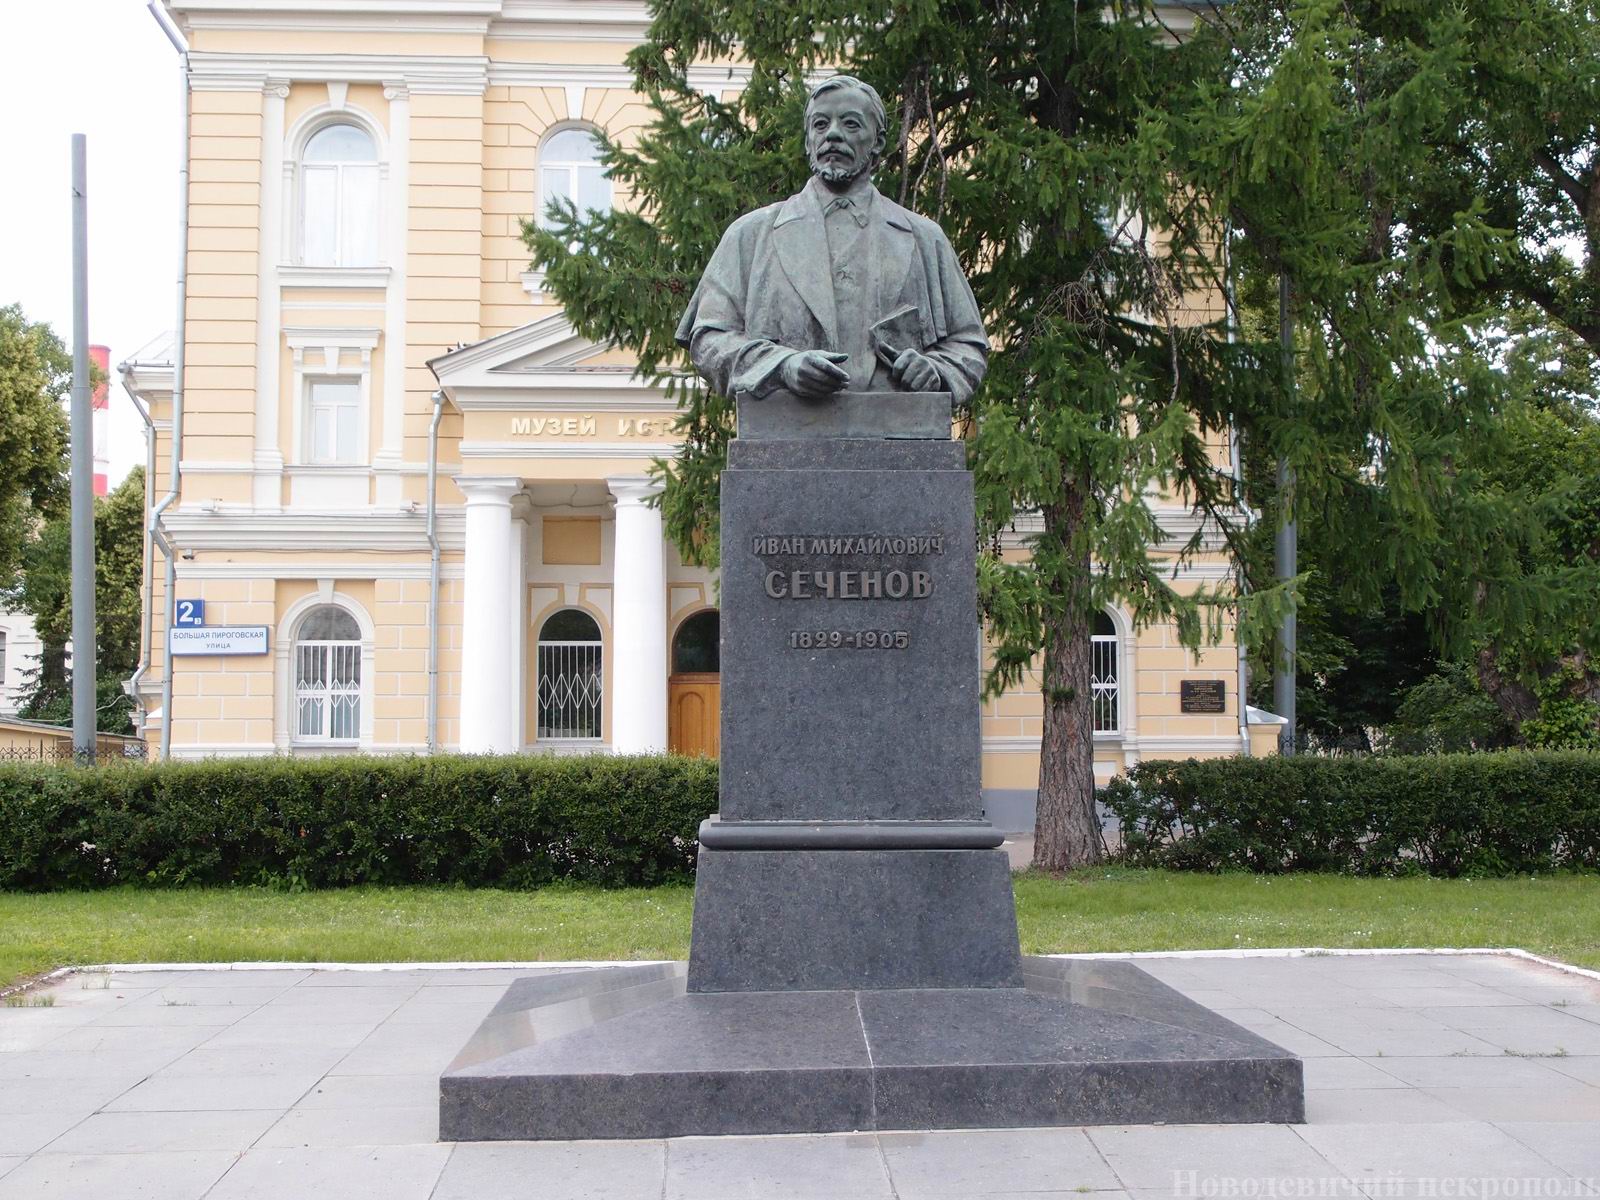 Памятник Сеченову И.М. (1829–1905), ск. Л.Е.Кербель, арх. Л.М.Поляков, на Большой Пироговской улице, открыт в 1958.